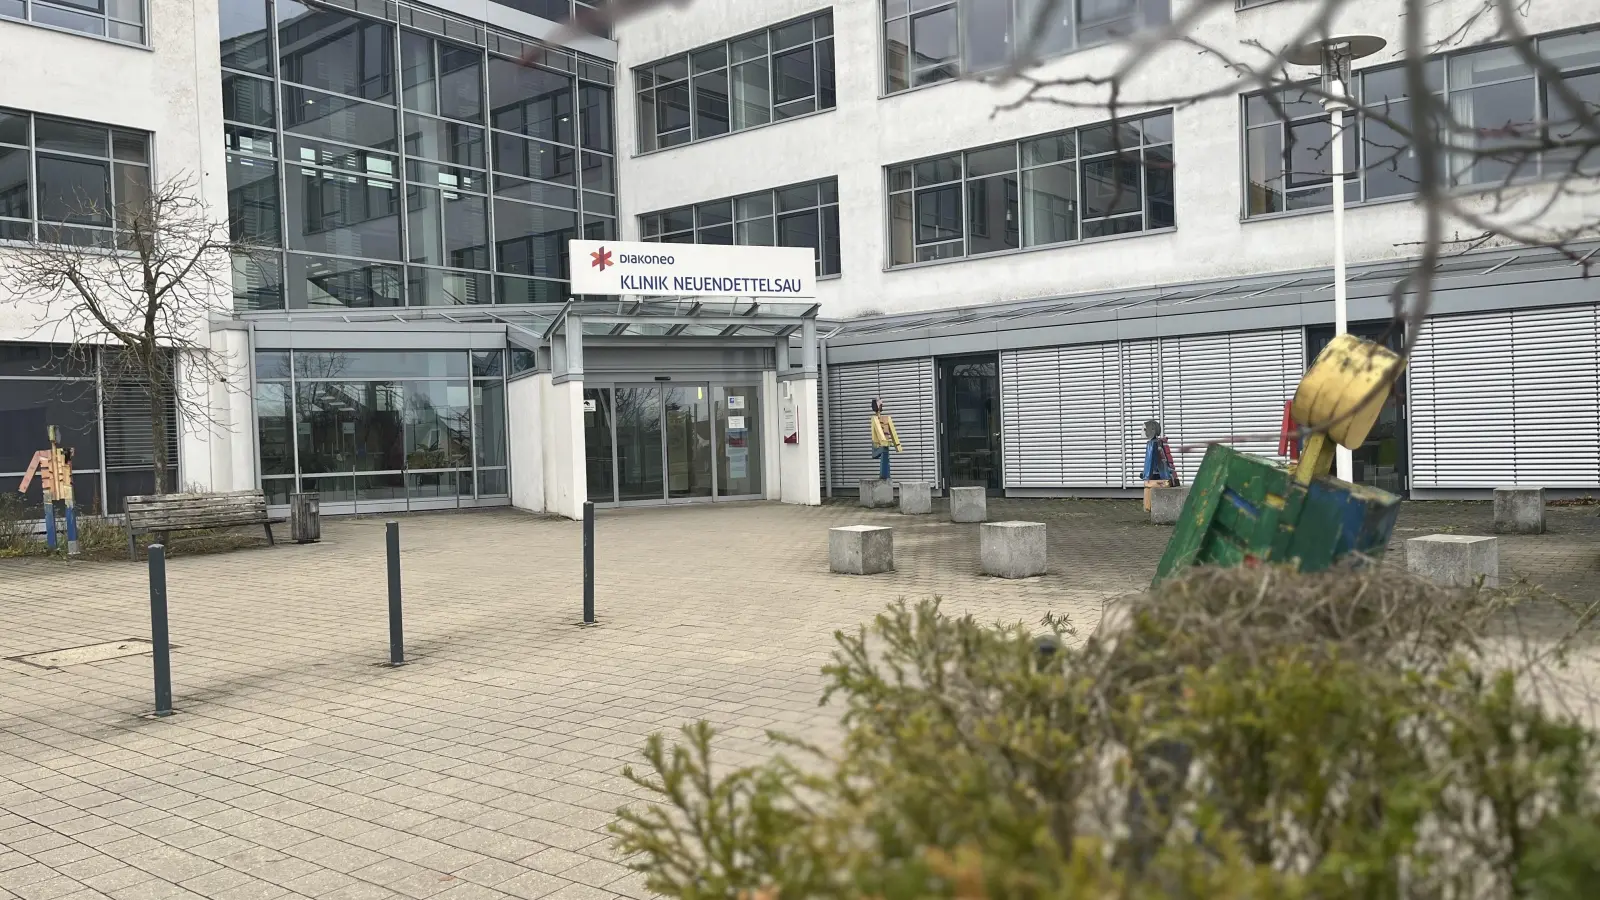 Stationäre Behandlungen wird es an der Diakoneo Klinik Neuendettelsau ab sofort nicht mehr geben. Das Medizinische Versorgungszentrum bleibt allerdings weiterhin geöffnet. (Foto: Laura Nadler)